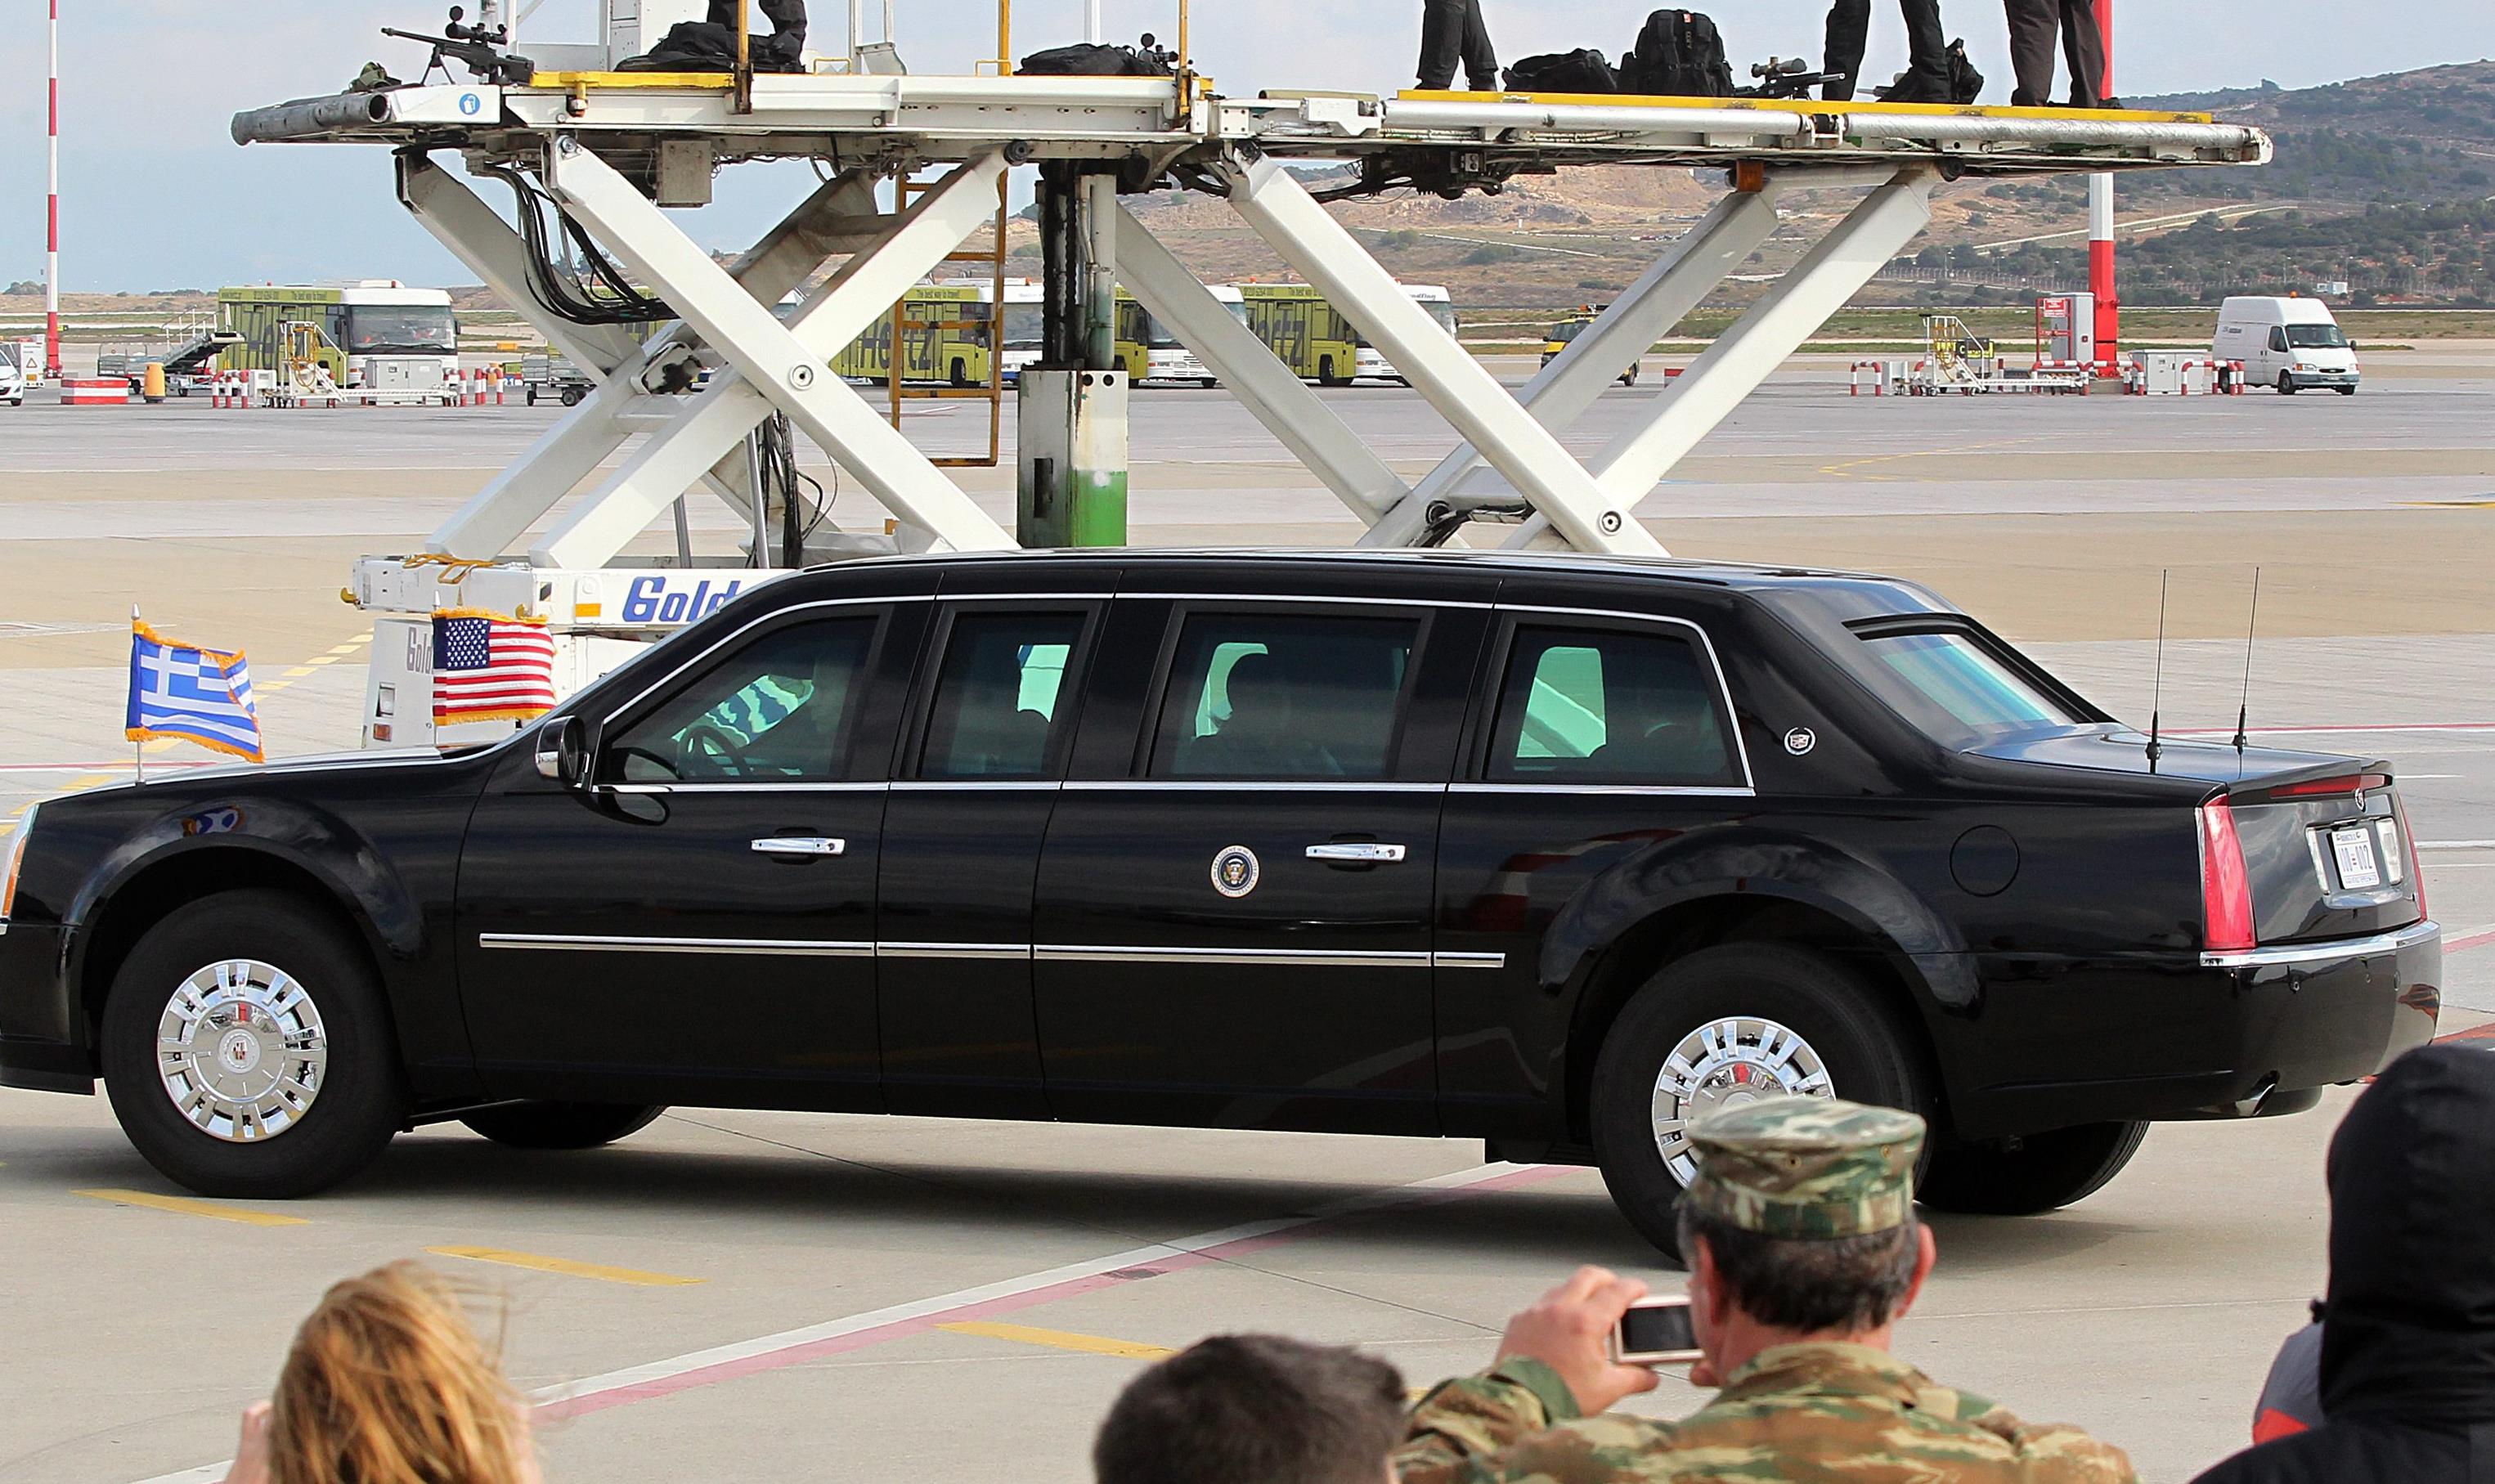 Τα μέτρα ασφαλείας για την επίσκεψη ενός αμερικανού προέδρου σε ξένη χώρα